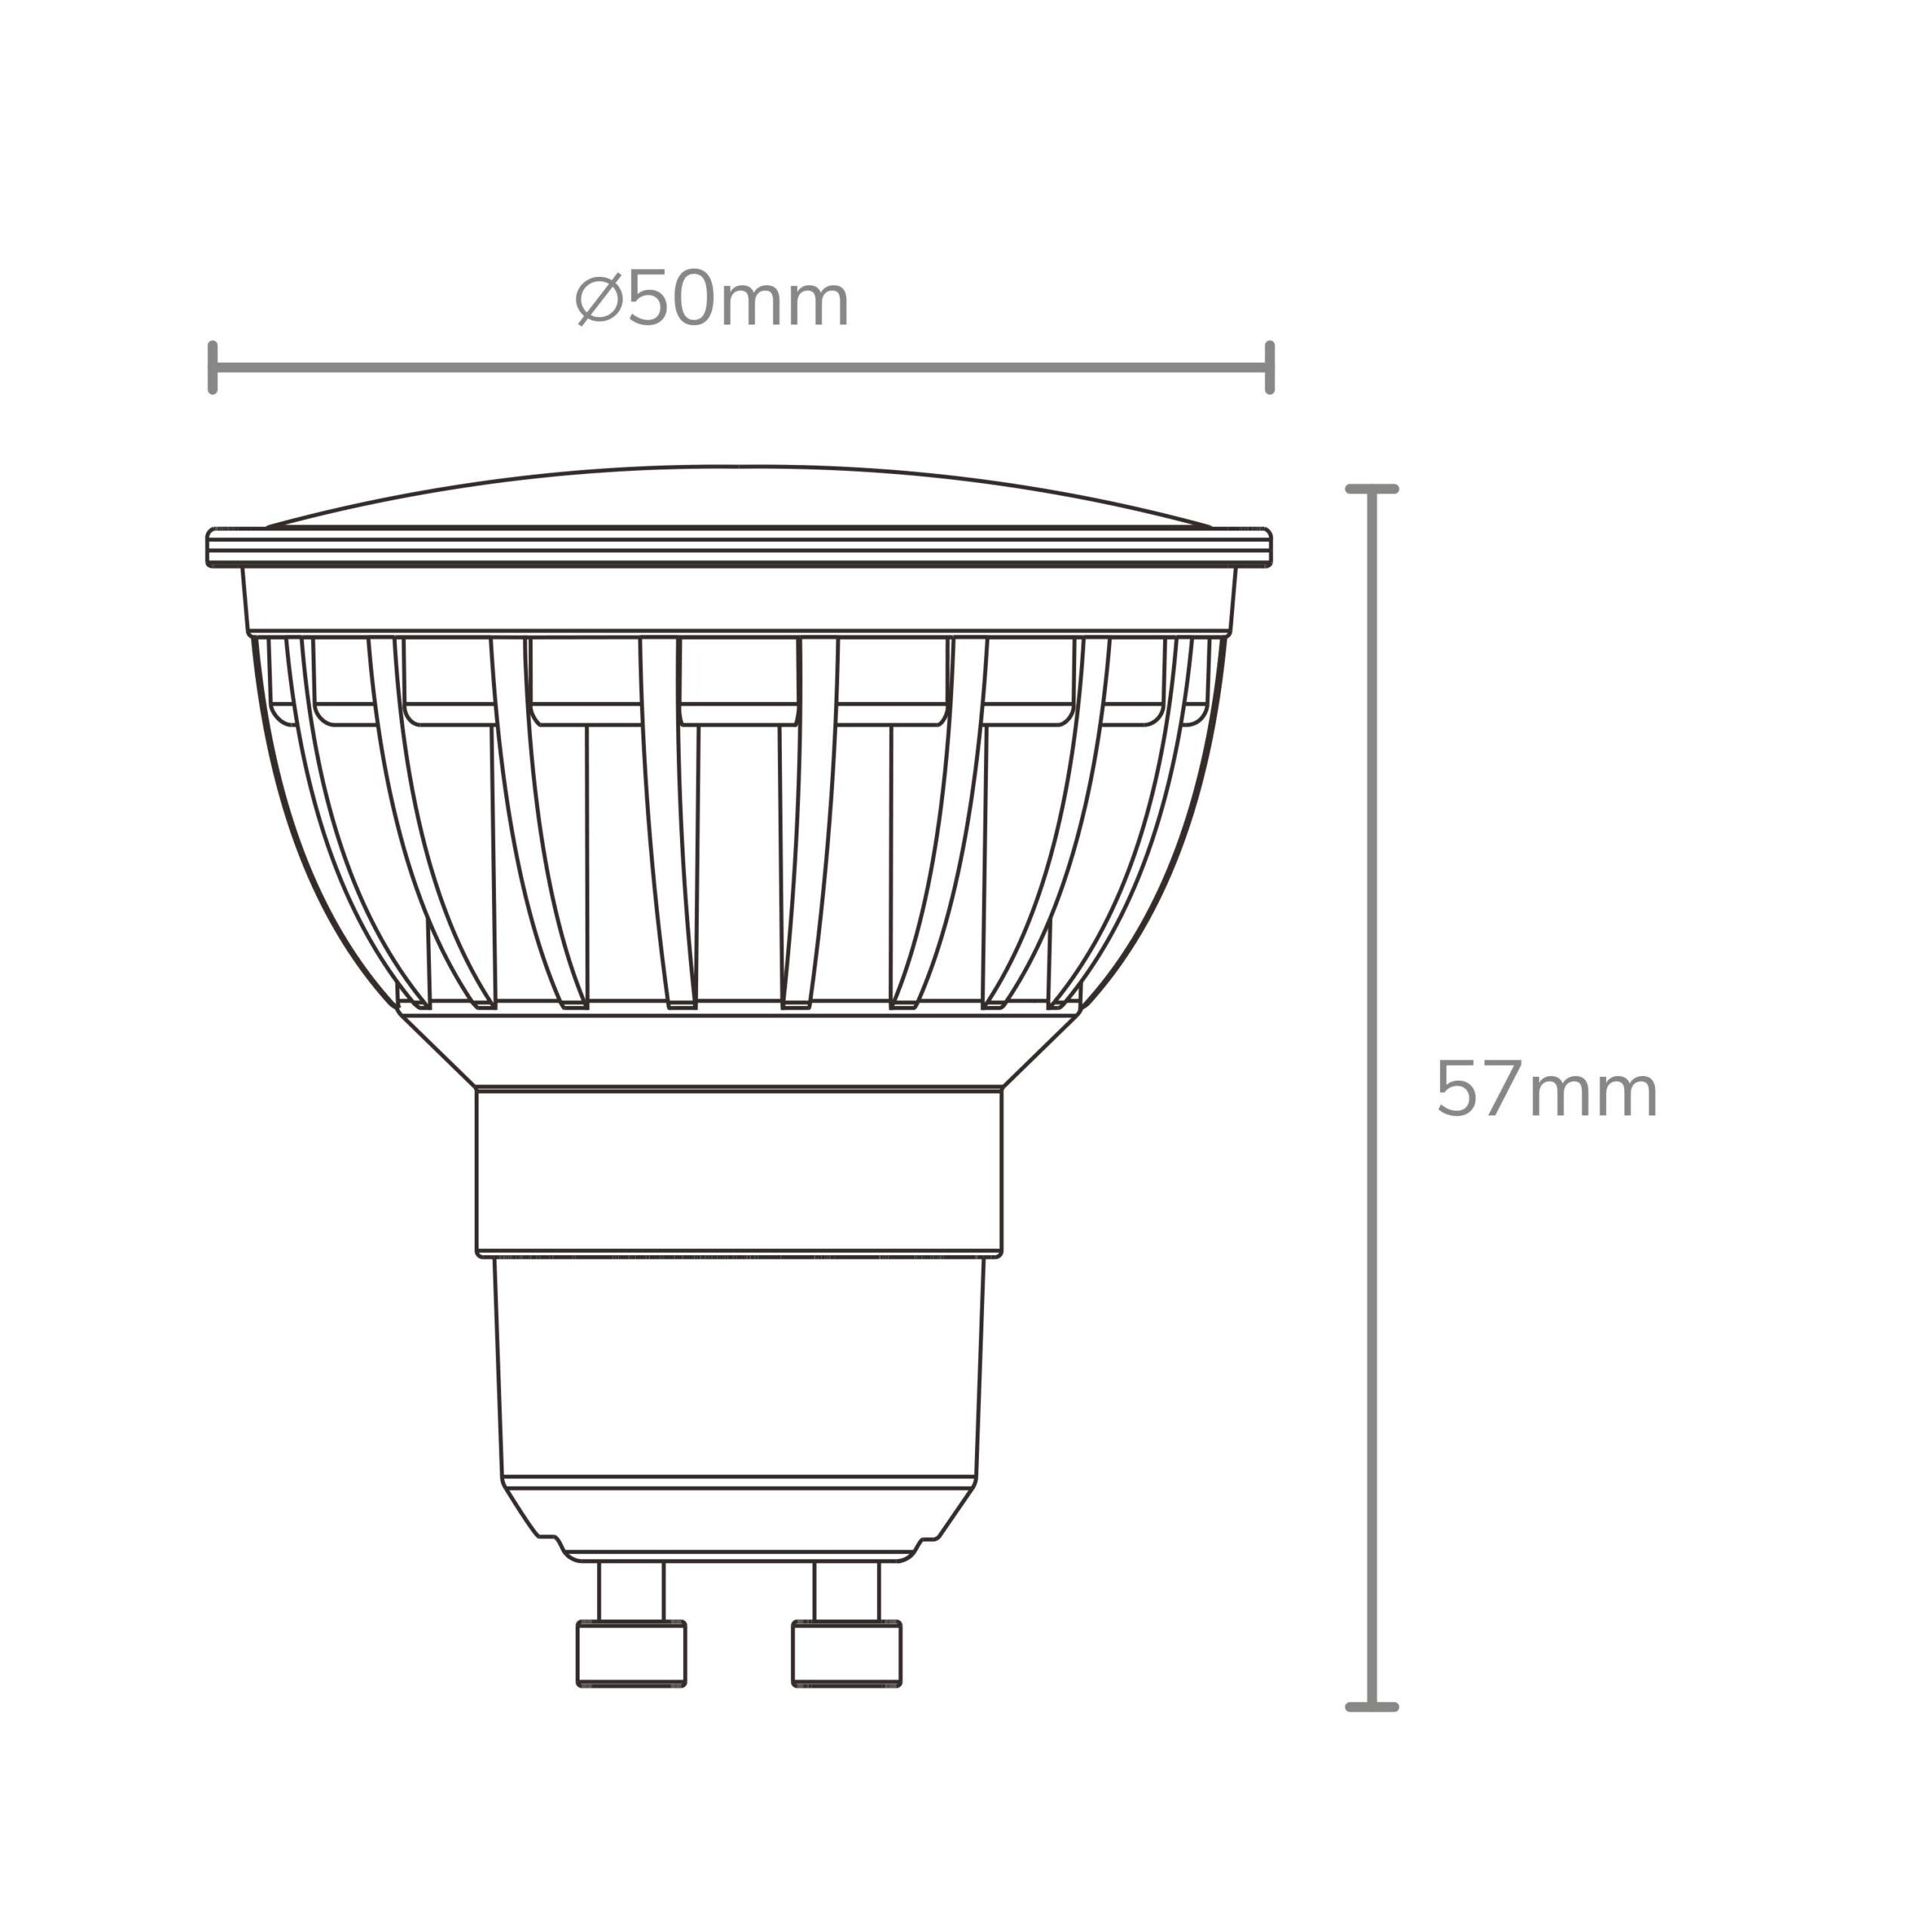 Lampe LED GU10 RGB + CCT - Vanda Lighting